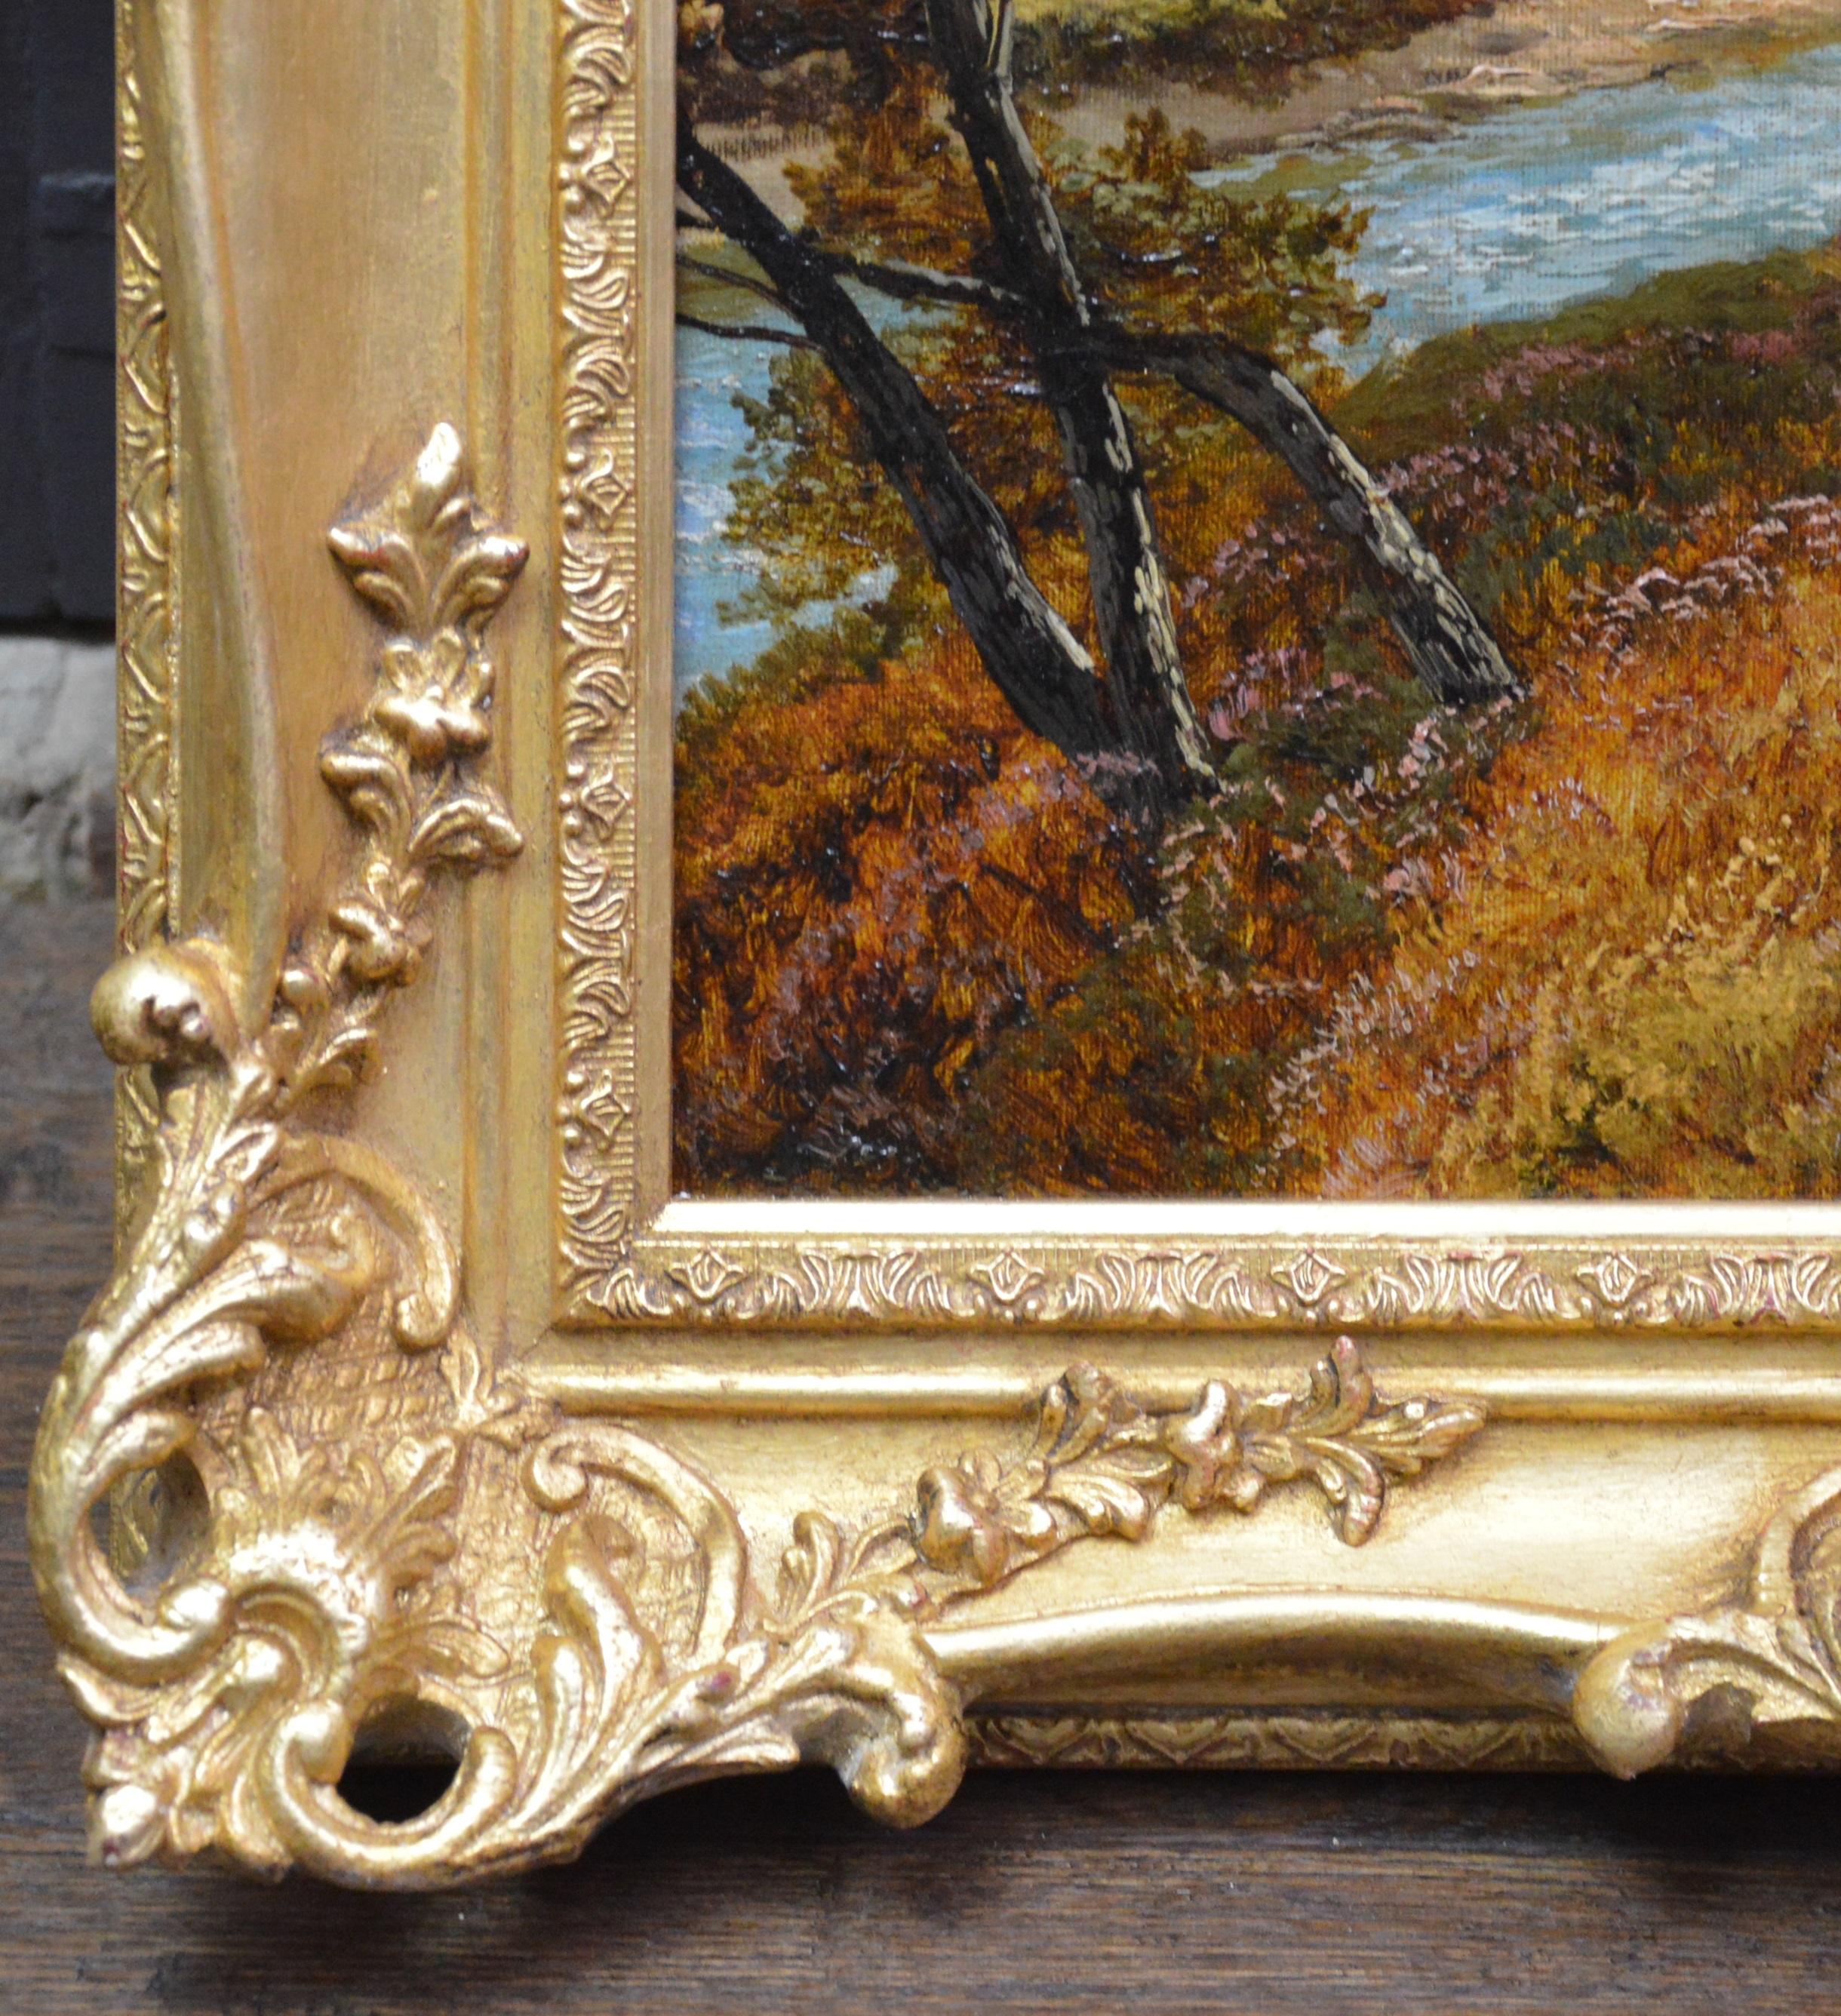 On the River Tay - Peinture à l'huile du 19ème siècle - Paysage des Highlands écossais 3